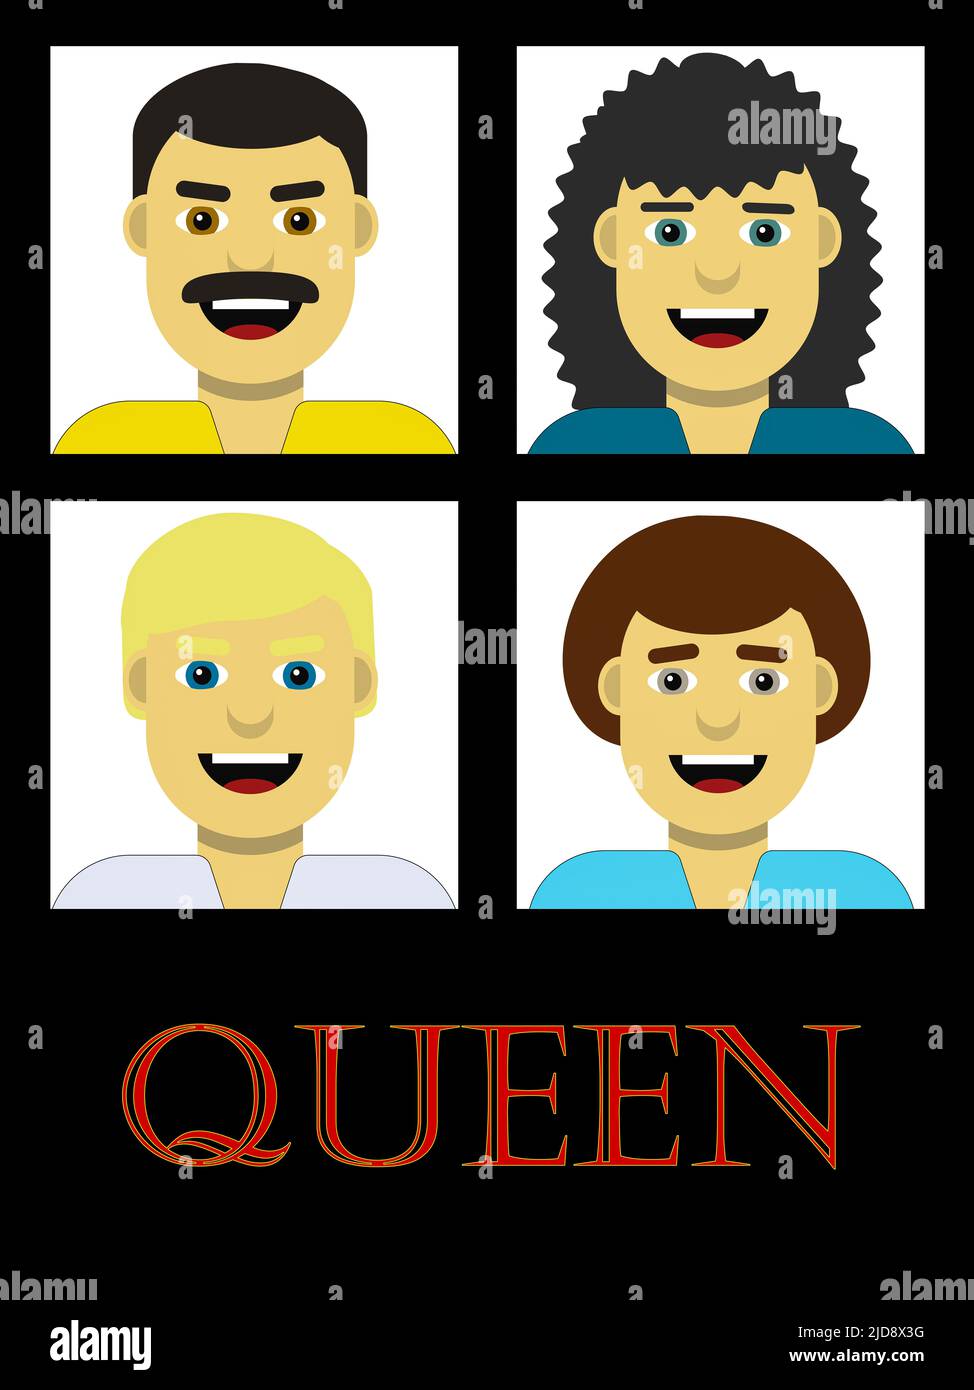 Un'icona stilizzata del gruppo rock Queen con Freddie Mercury, Brian May, Roger Taylor e John Deacon Foto Stock